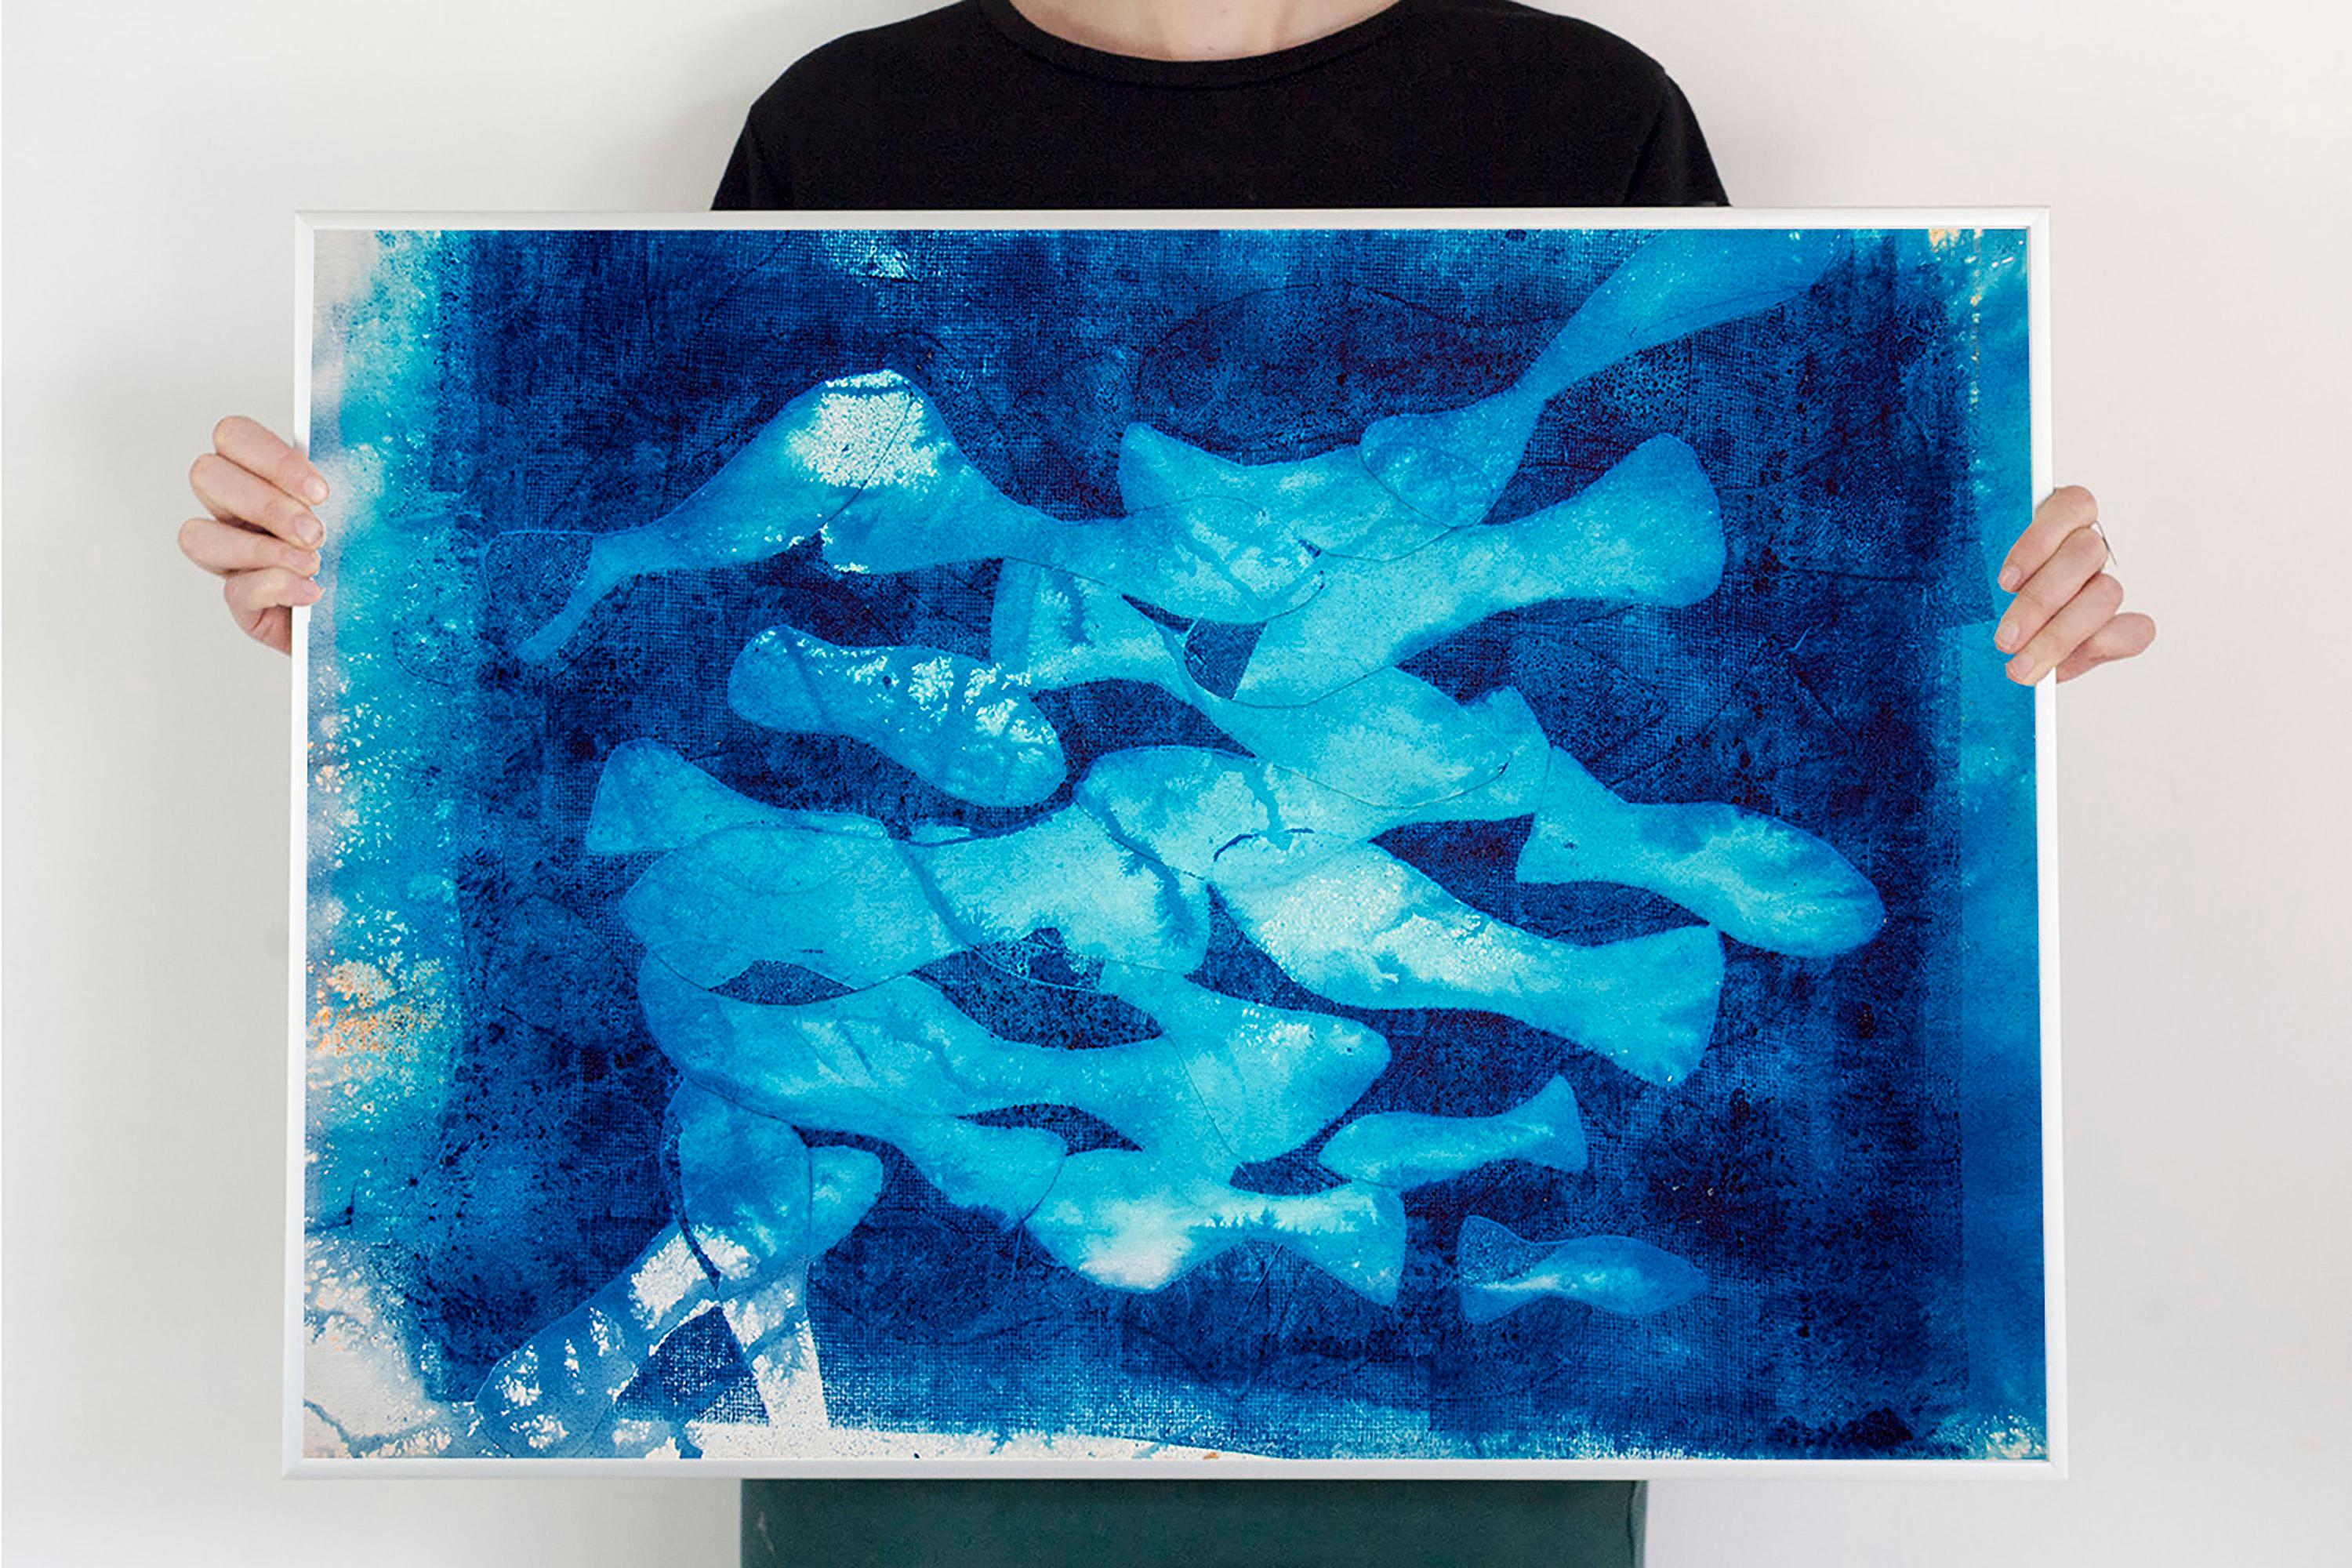 Marina Abismal, peinture technique mixte, tons bleus, motifs de poissons méditerranéens - Painting de Enric Servera